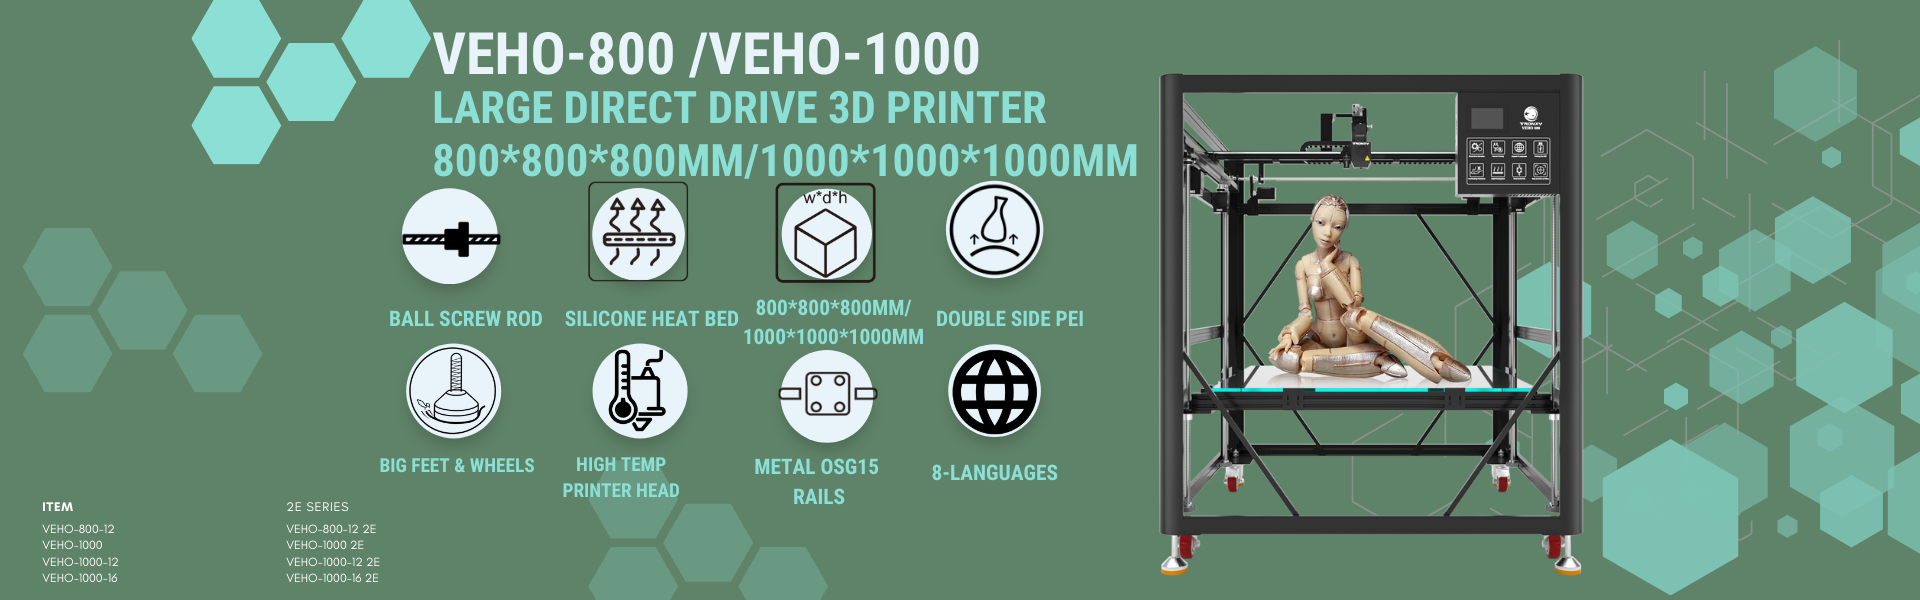 veho-800 3d printer